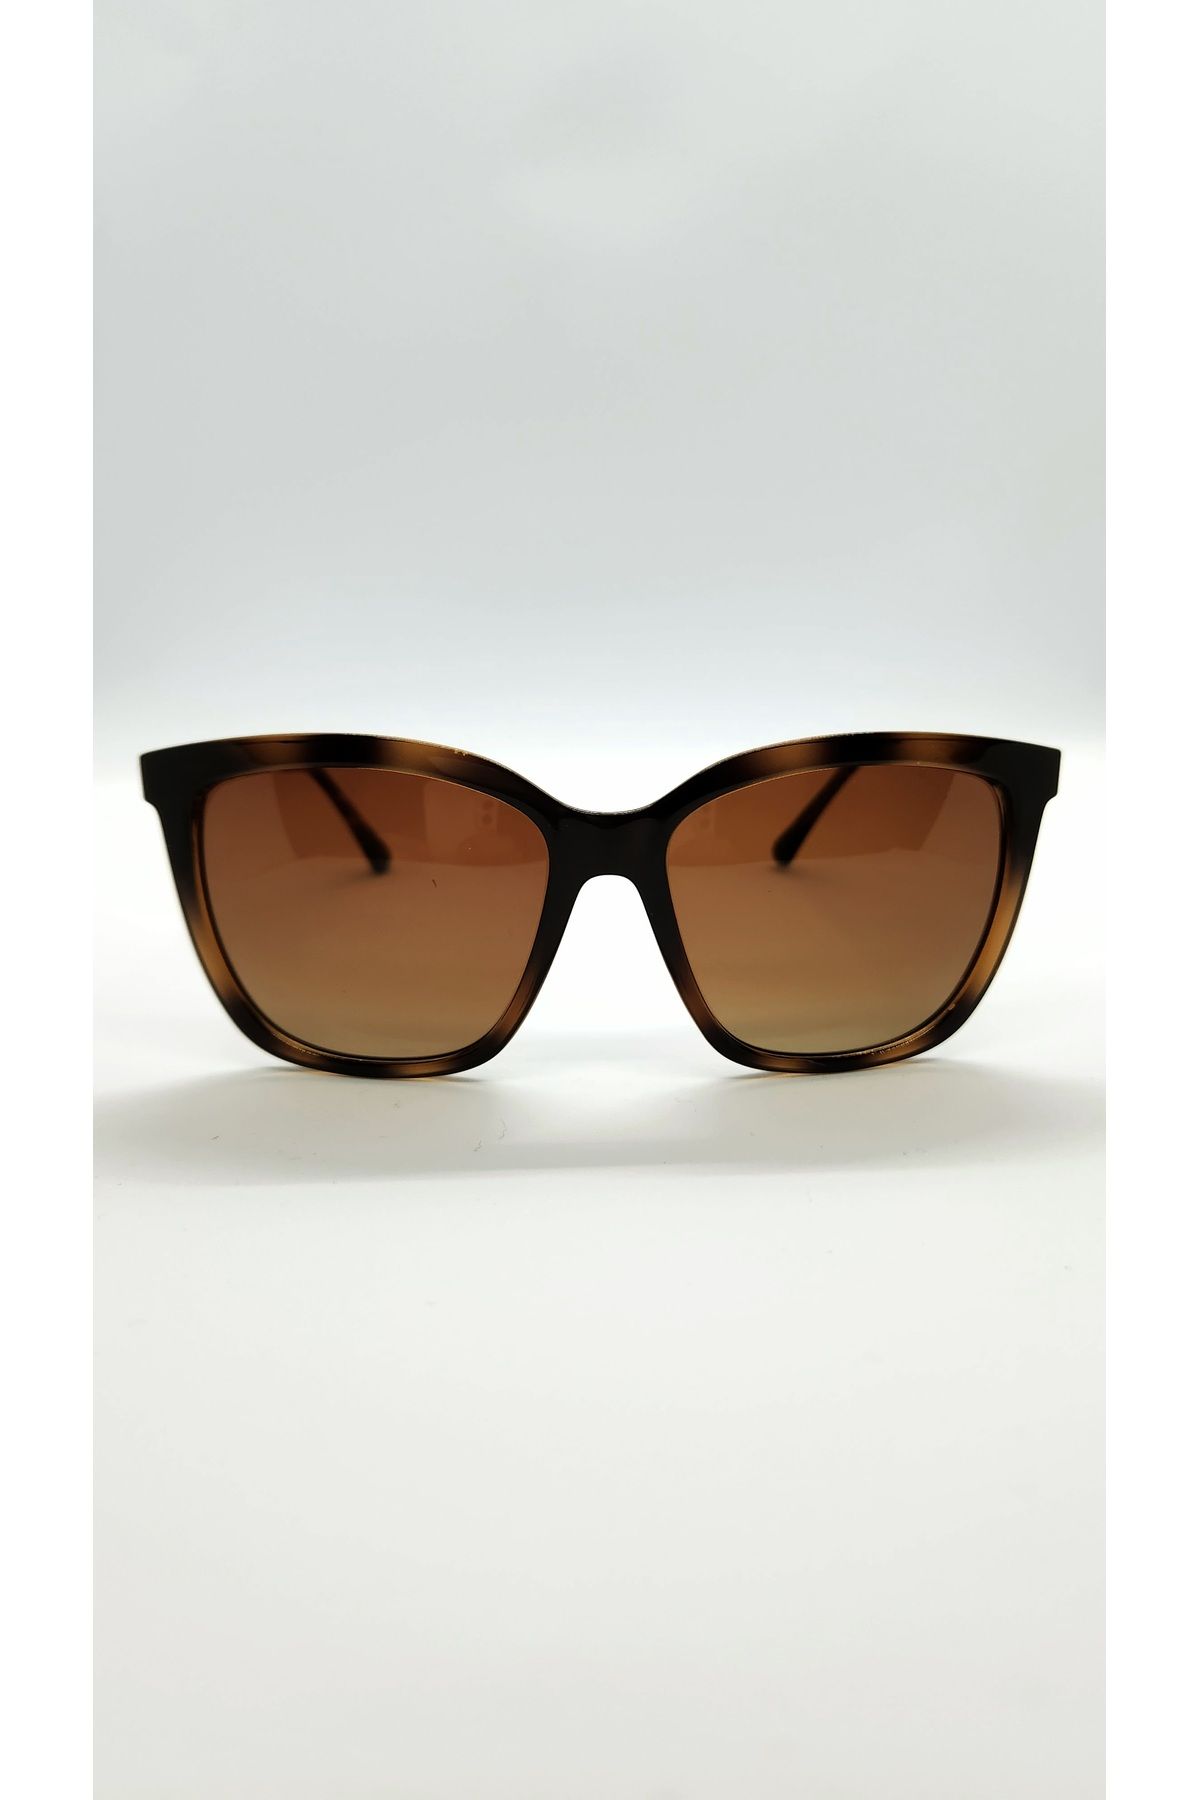 Benx Sunglasses Kahverengi Köşeli Model Metal Kollu Kadın Güneş Gözlüğü